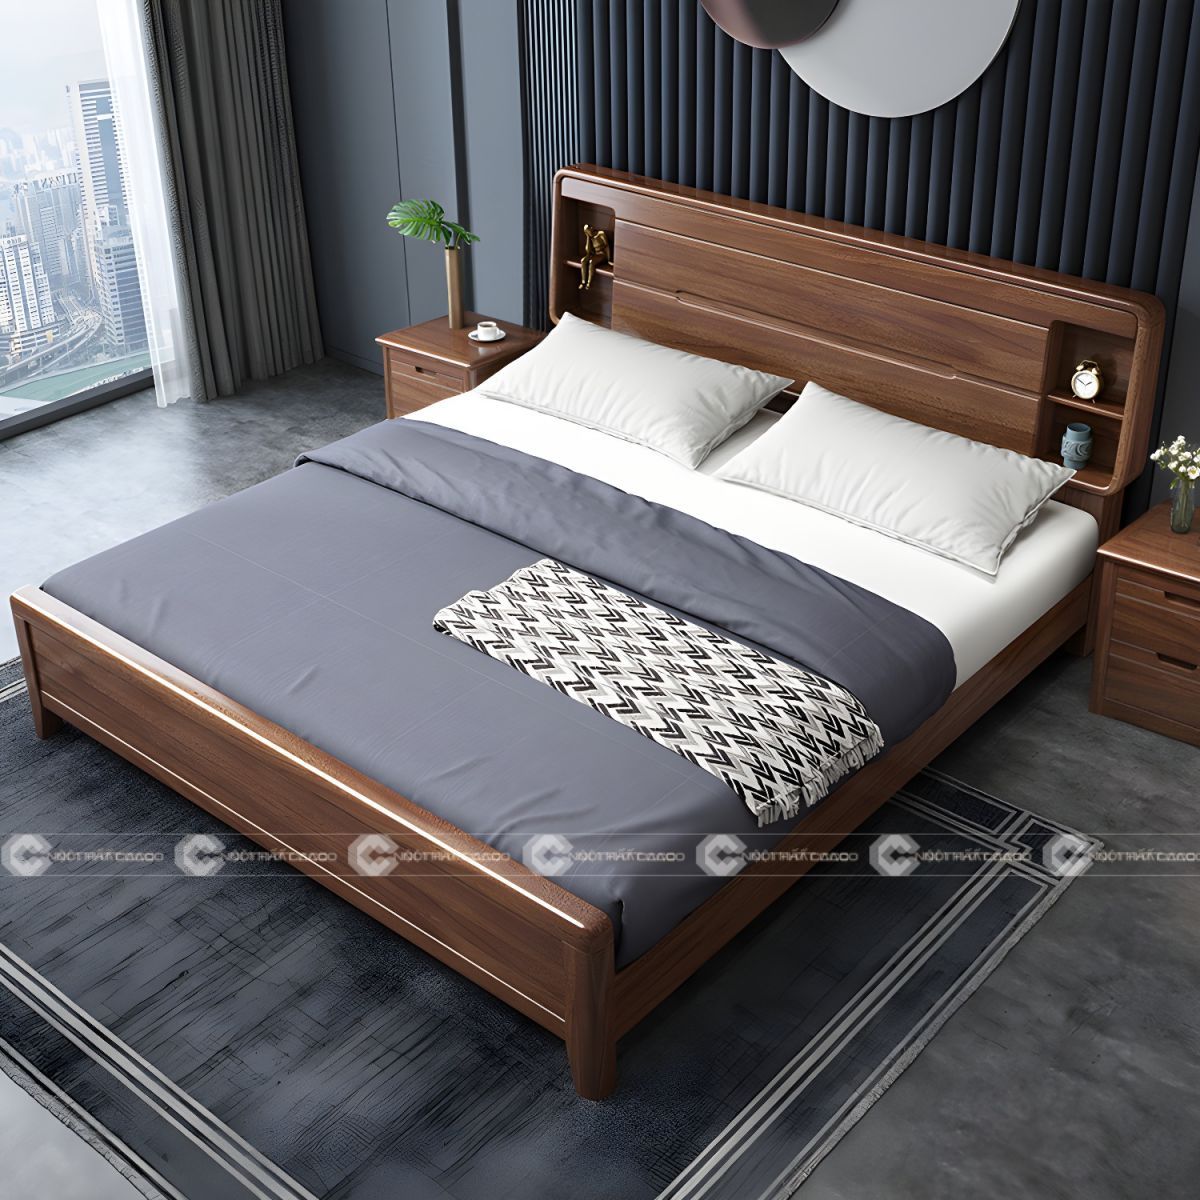 Giường gỗ tự nhiên chân thấp tối ưu diện tích